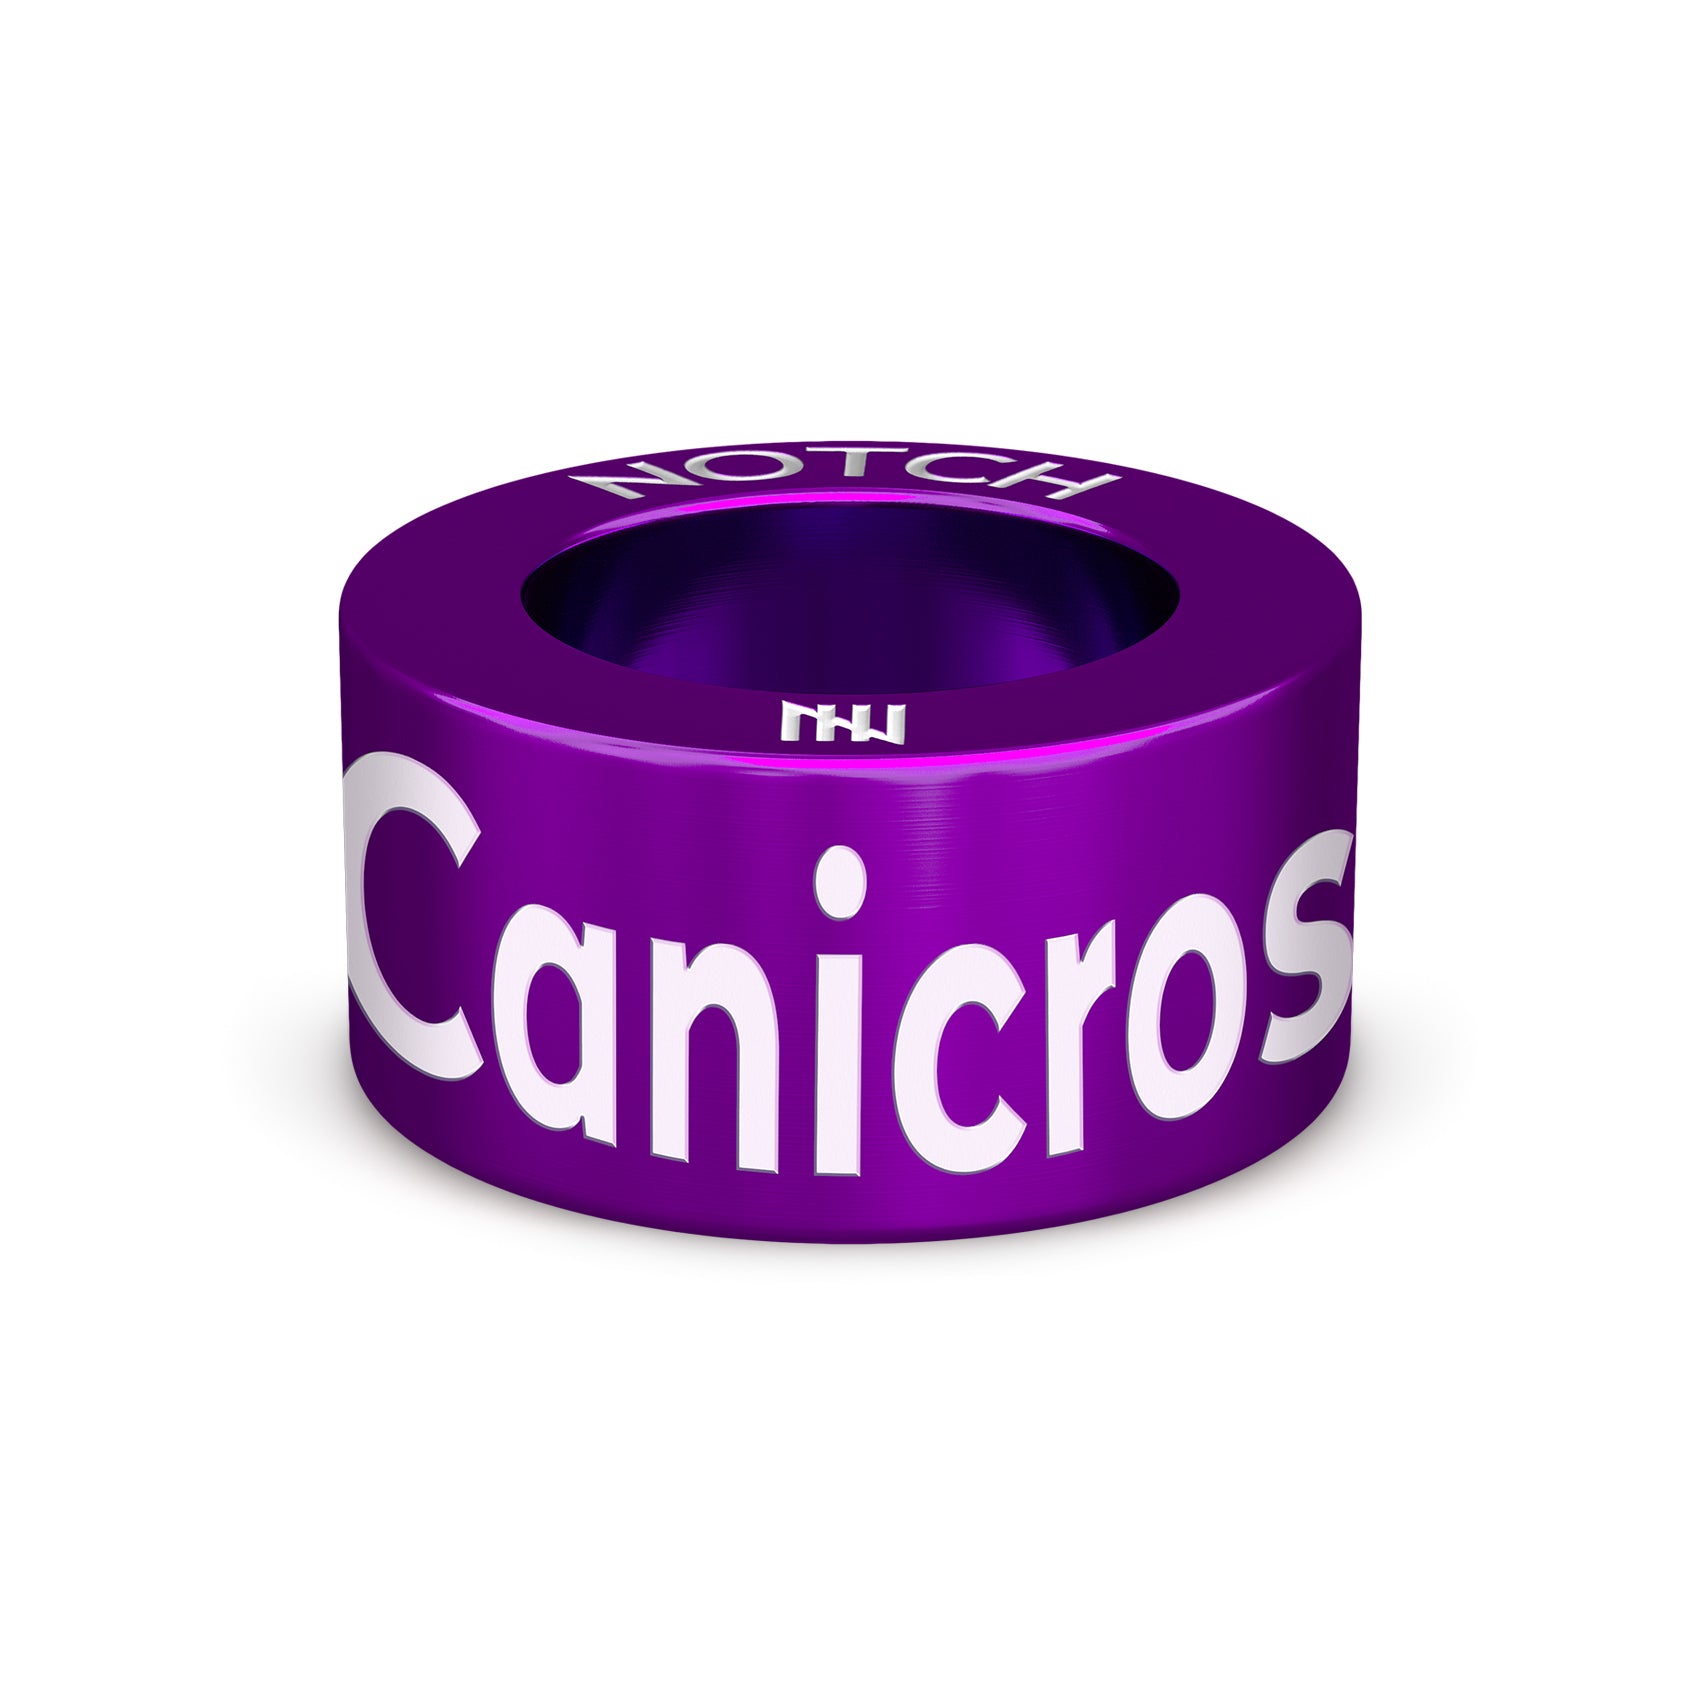 I Love Canicross NOTCH Charm